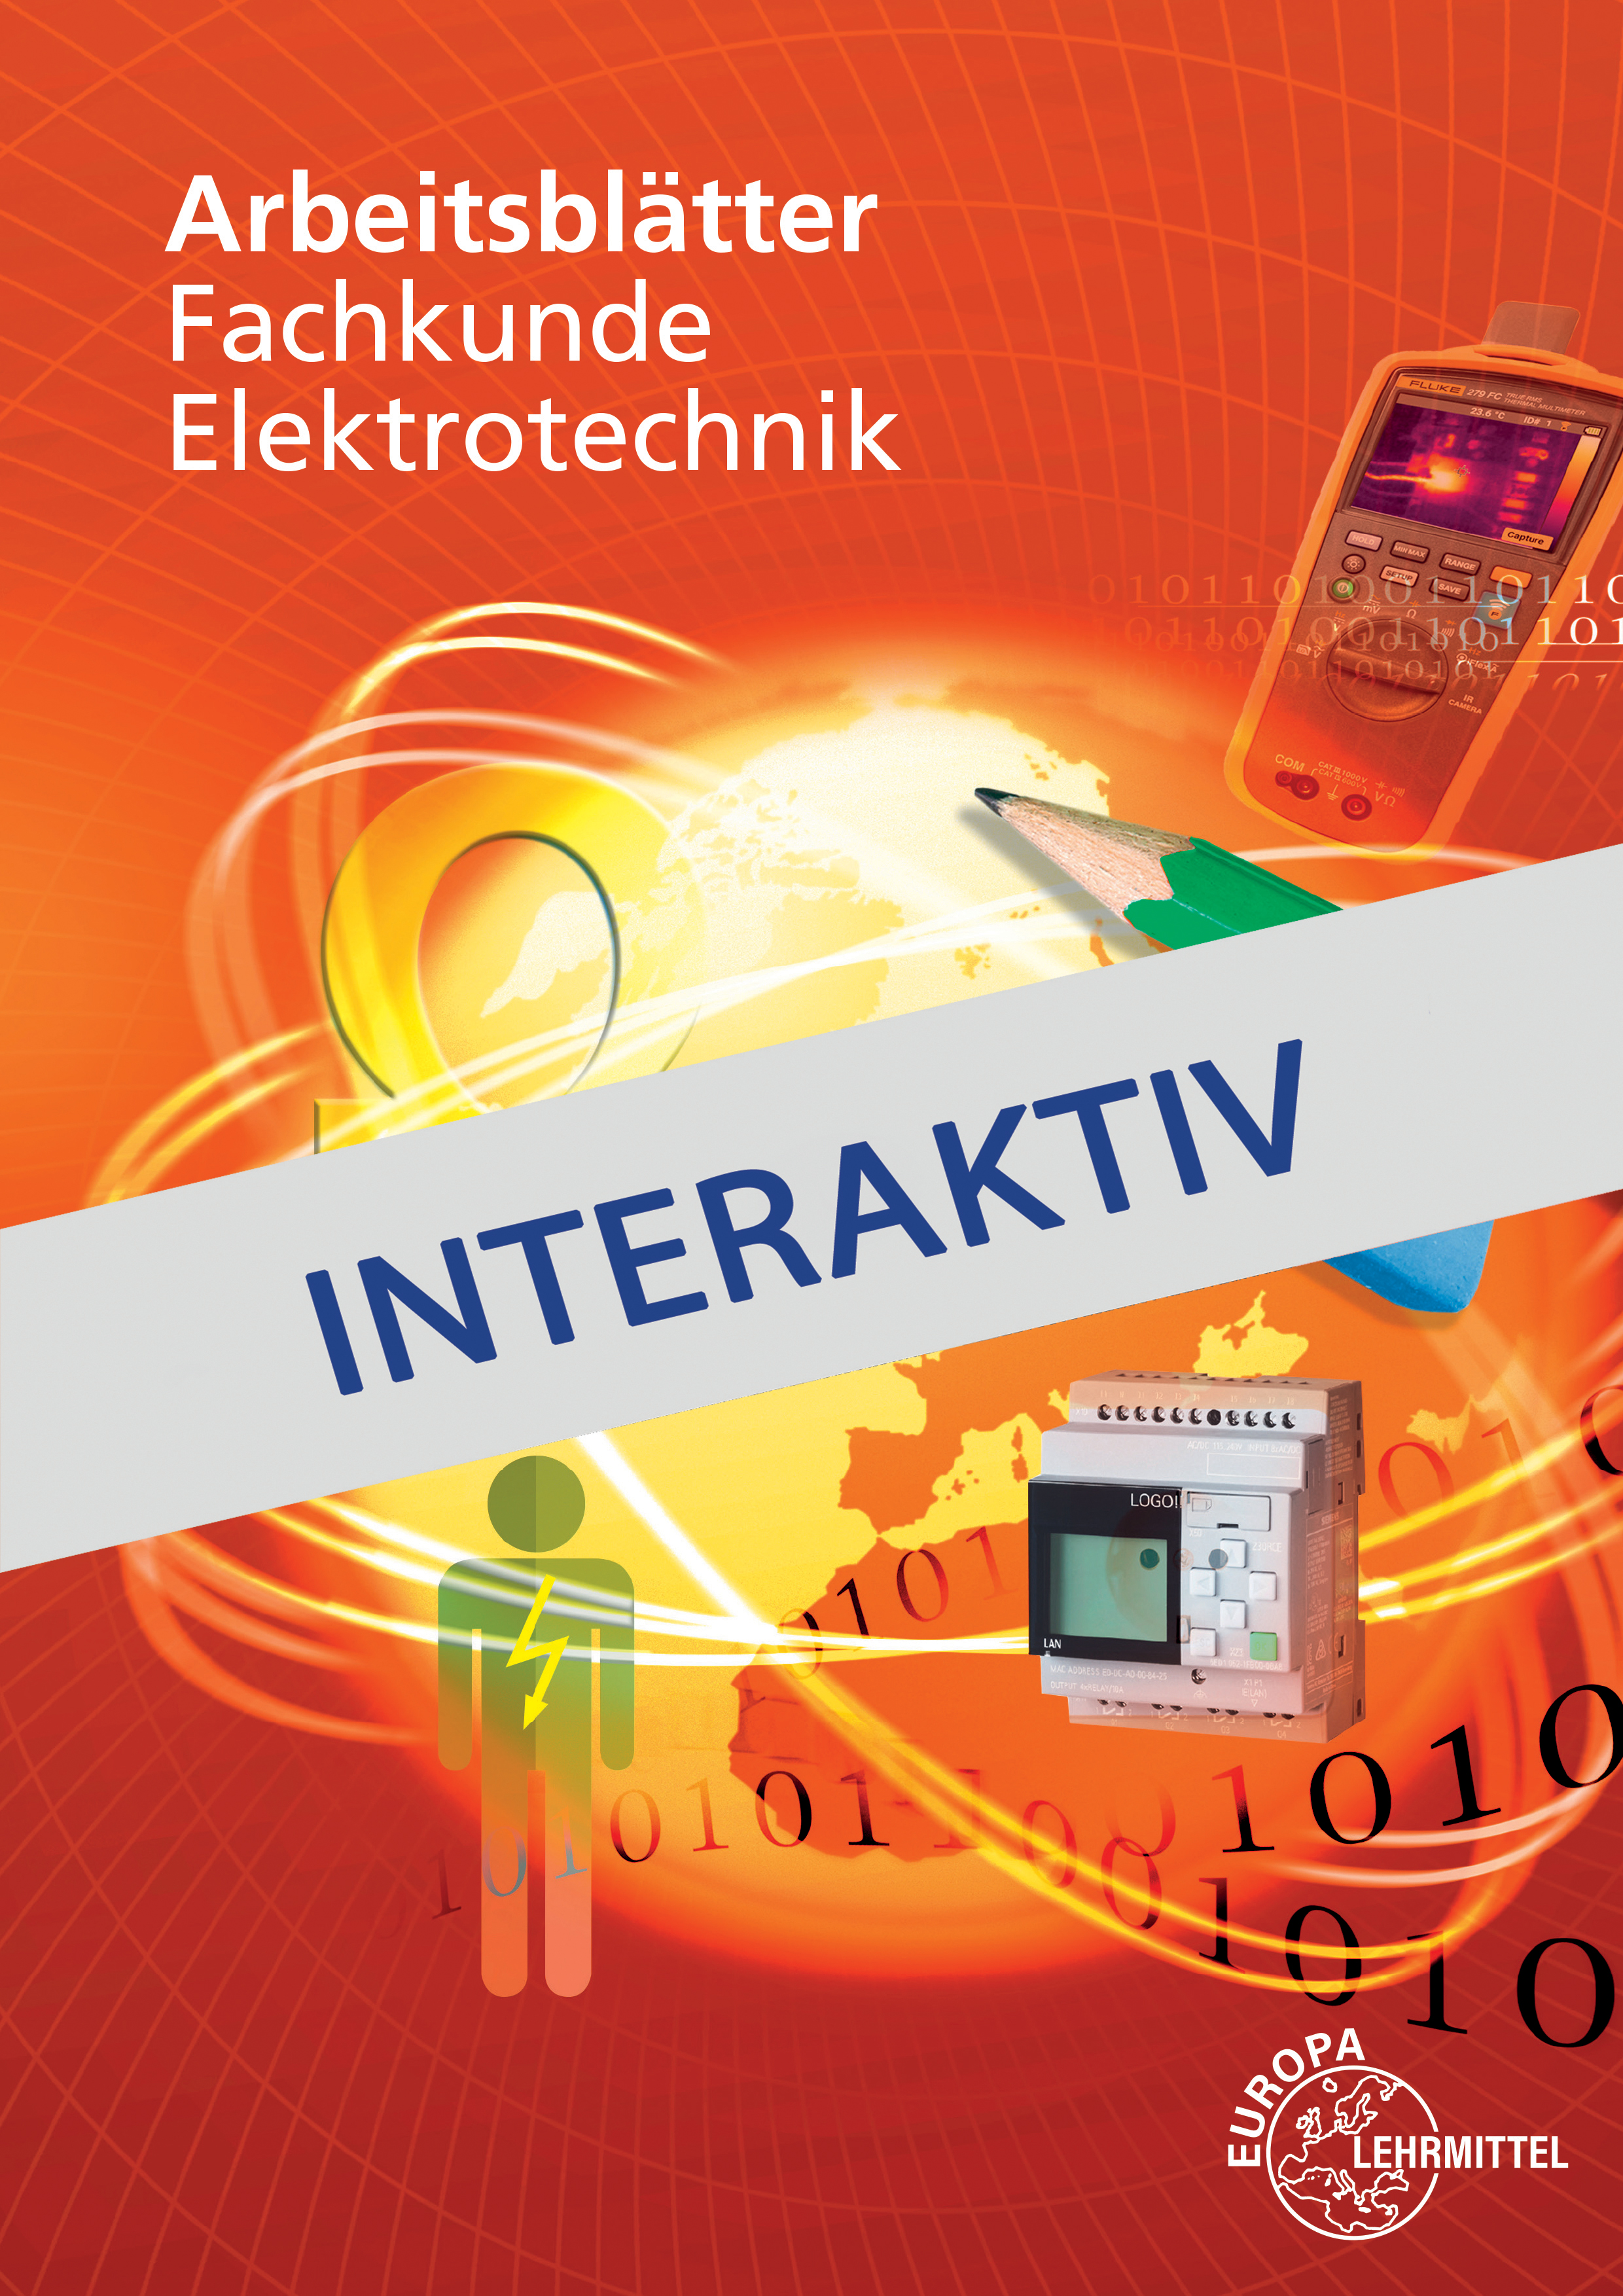 Arbeitsblätter Fachkunde Elektrotechnik interaktiv 3.1 digital